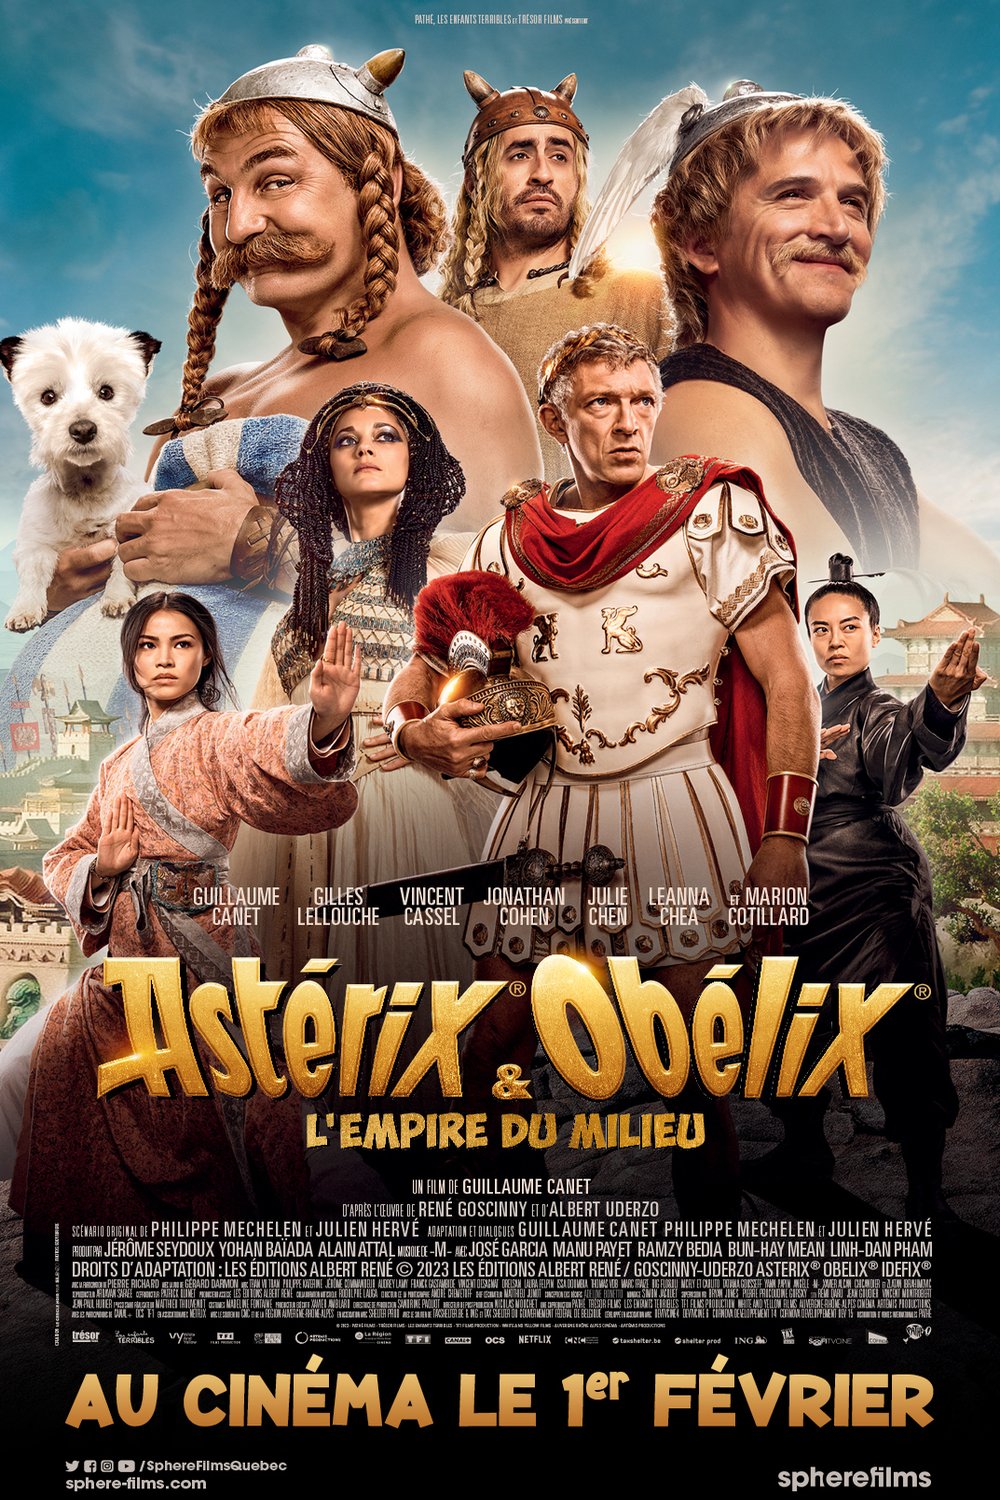 L'affiche du film Astérix & Obélix: L'empire du milieu